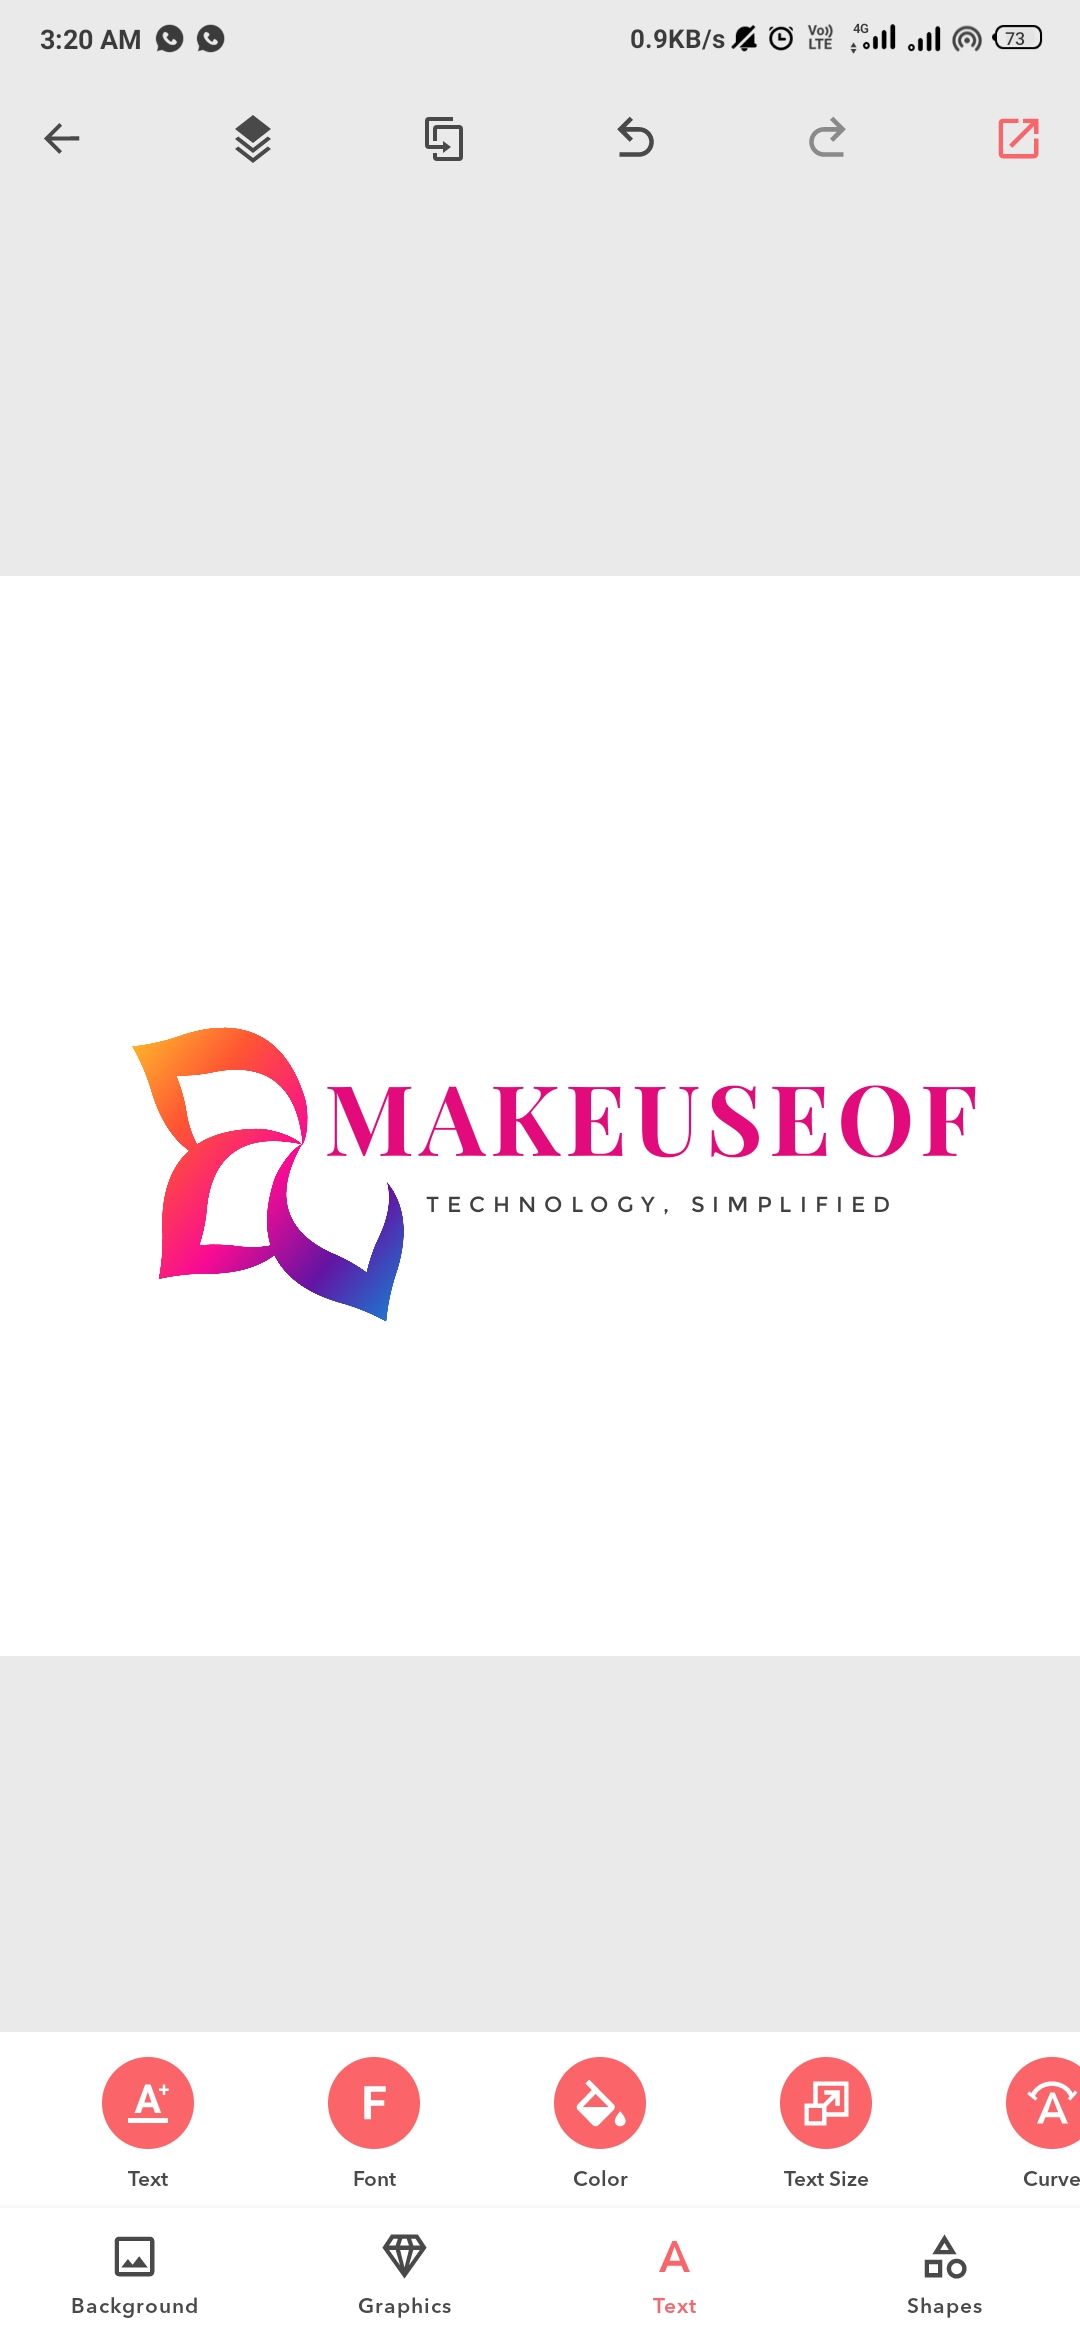 Creating a logo in LogoMaker app